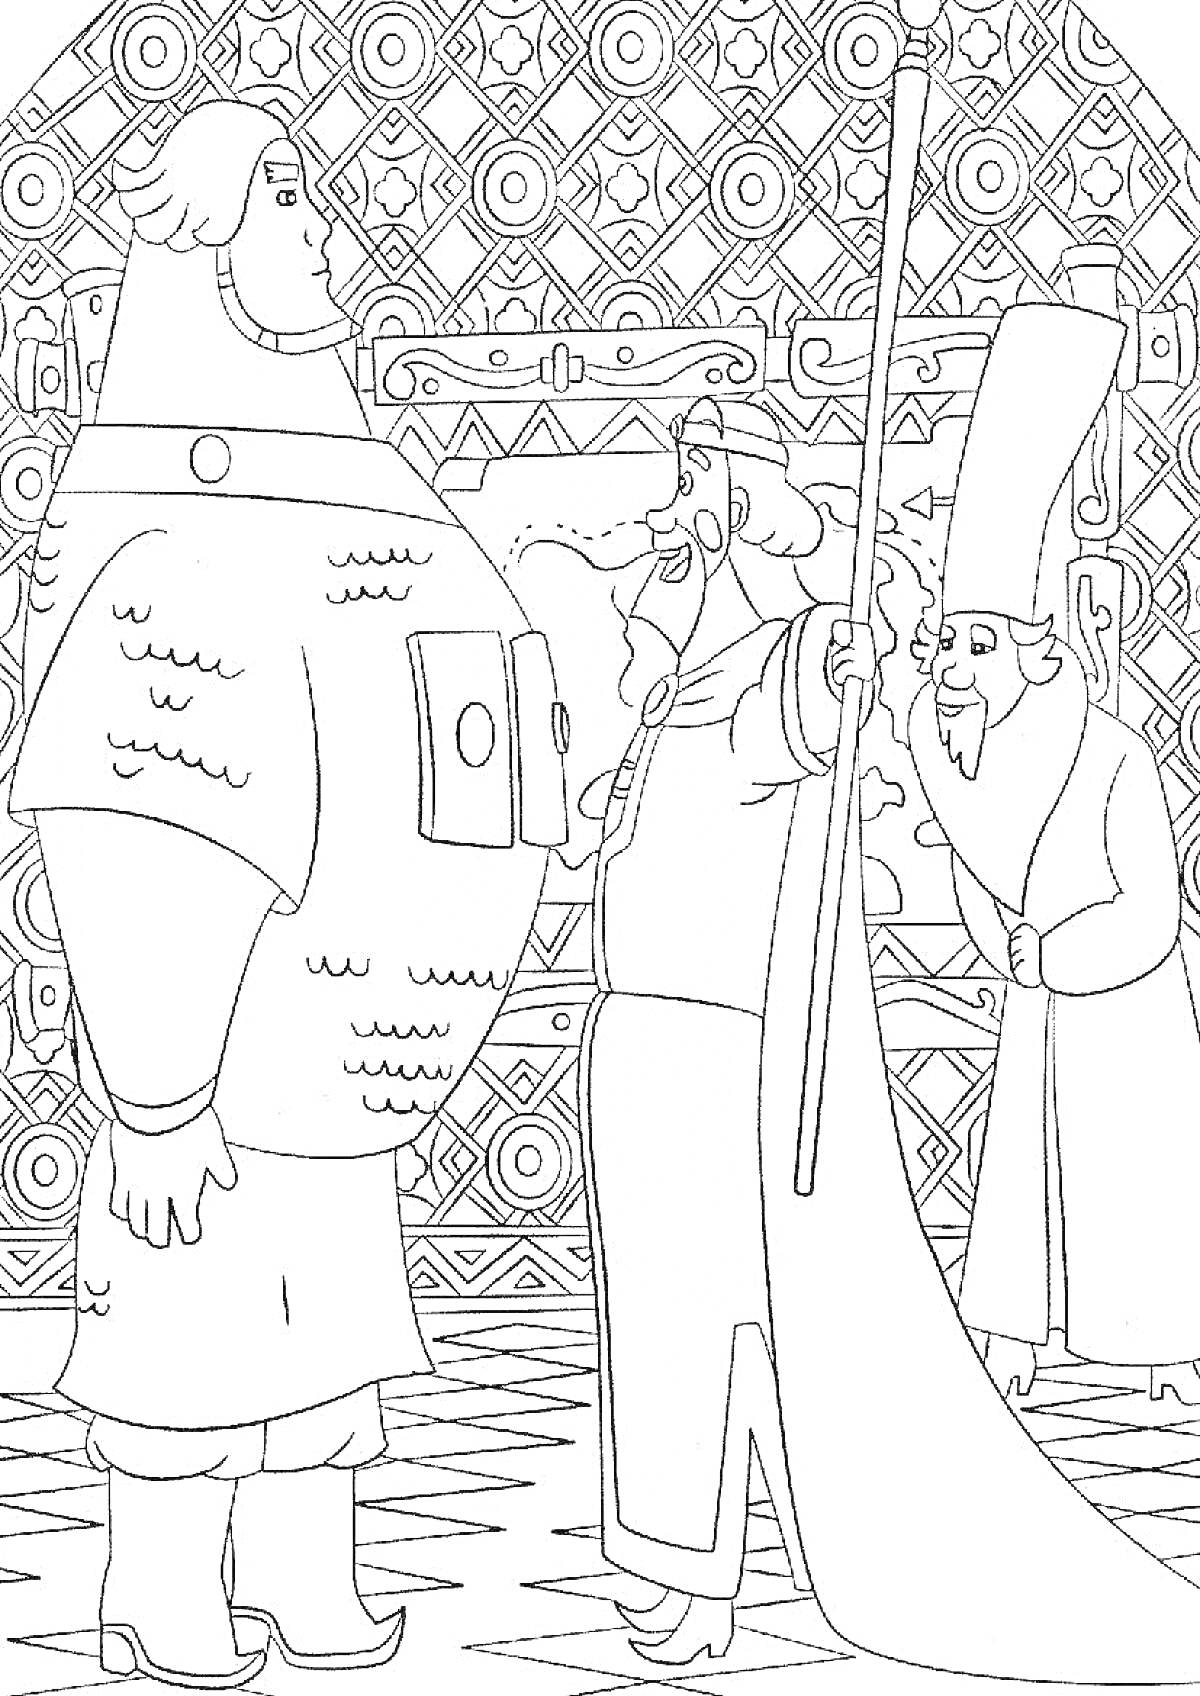 Раскраска князь и два богатыря, стоящие в интерьере с орнаментами